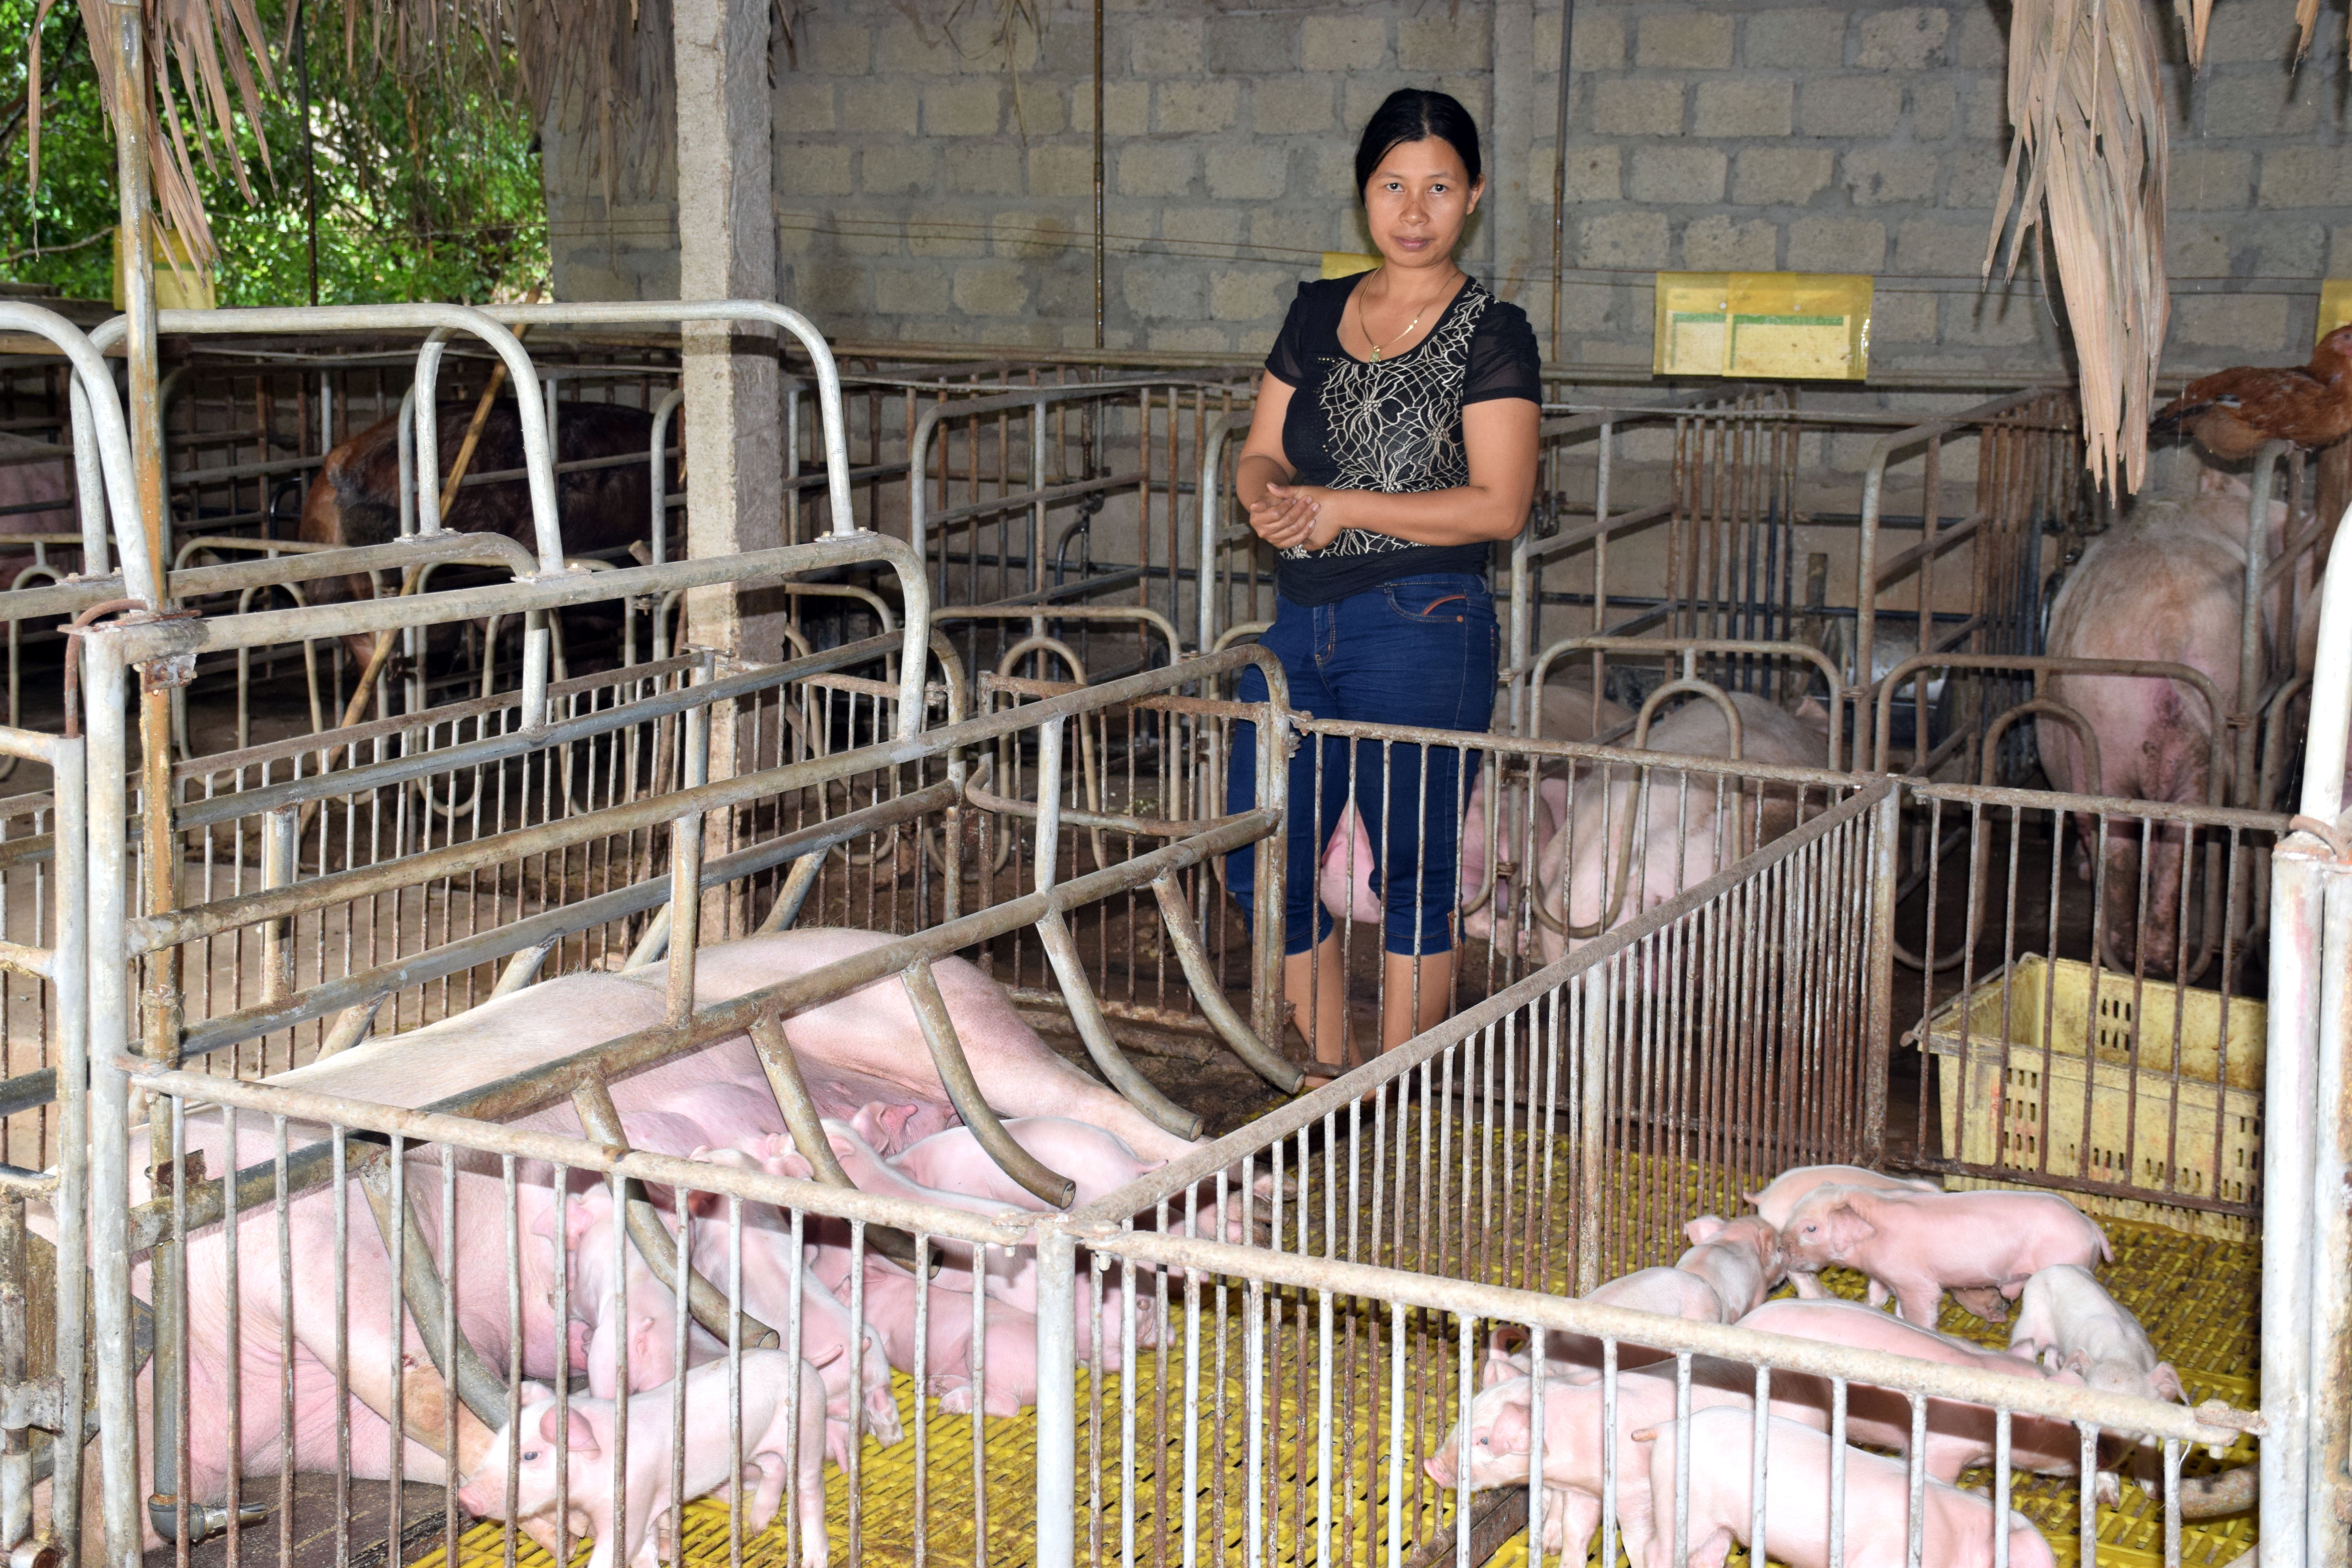 Đàn lợn nái trên địa bàn Nghệ An thiếu hụt do bệnh dịch tả lợn châu Phi từ đầu năm 2019 đến nay. Ảnh: Xuân Hoàng